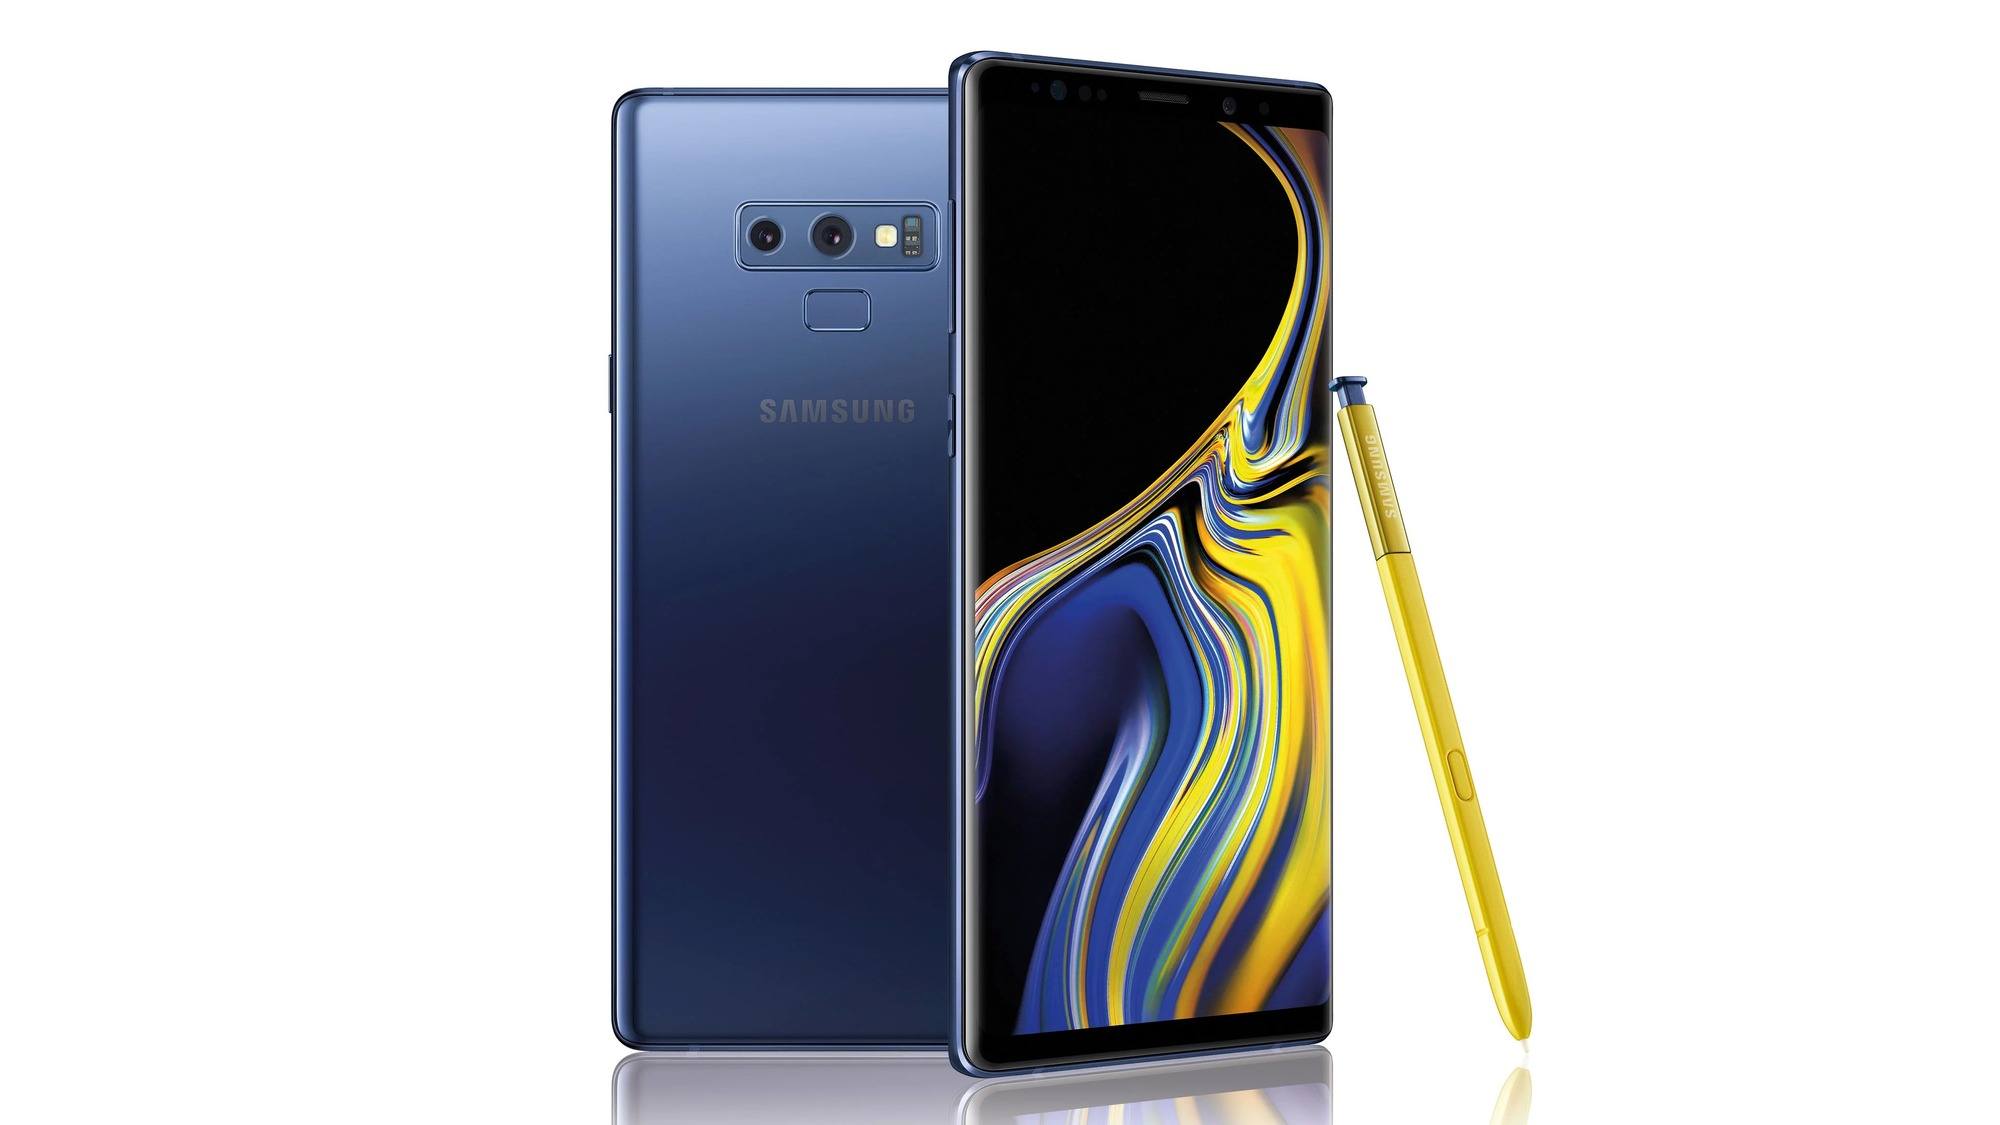 Samsung samsung galaxy note 9 Samsung Note 9 ou Apple XS Max pour 2019 ? Le comparatif en vidéo avec iT3ch ! Apple